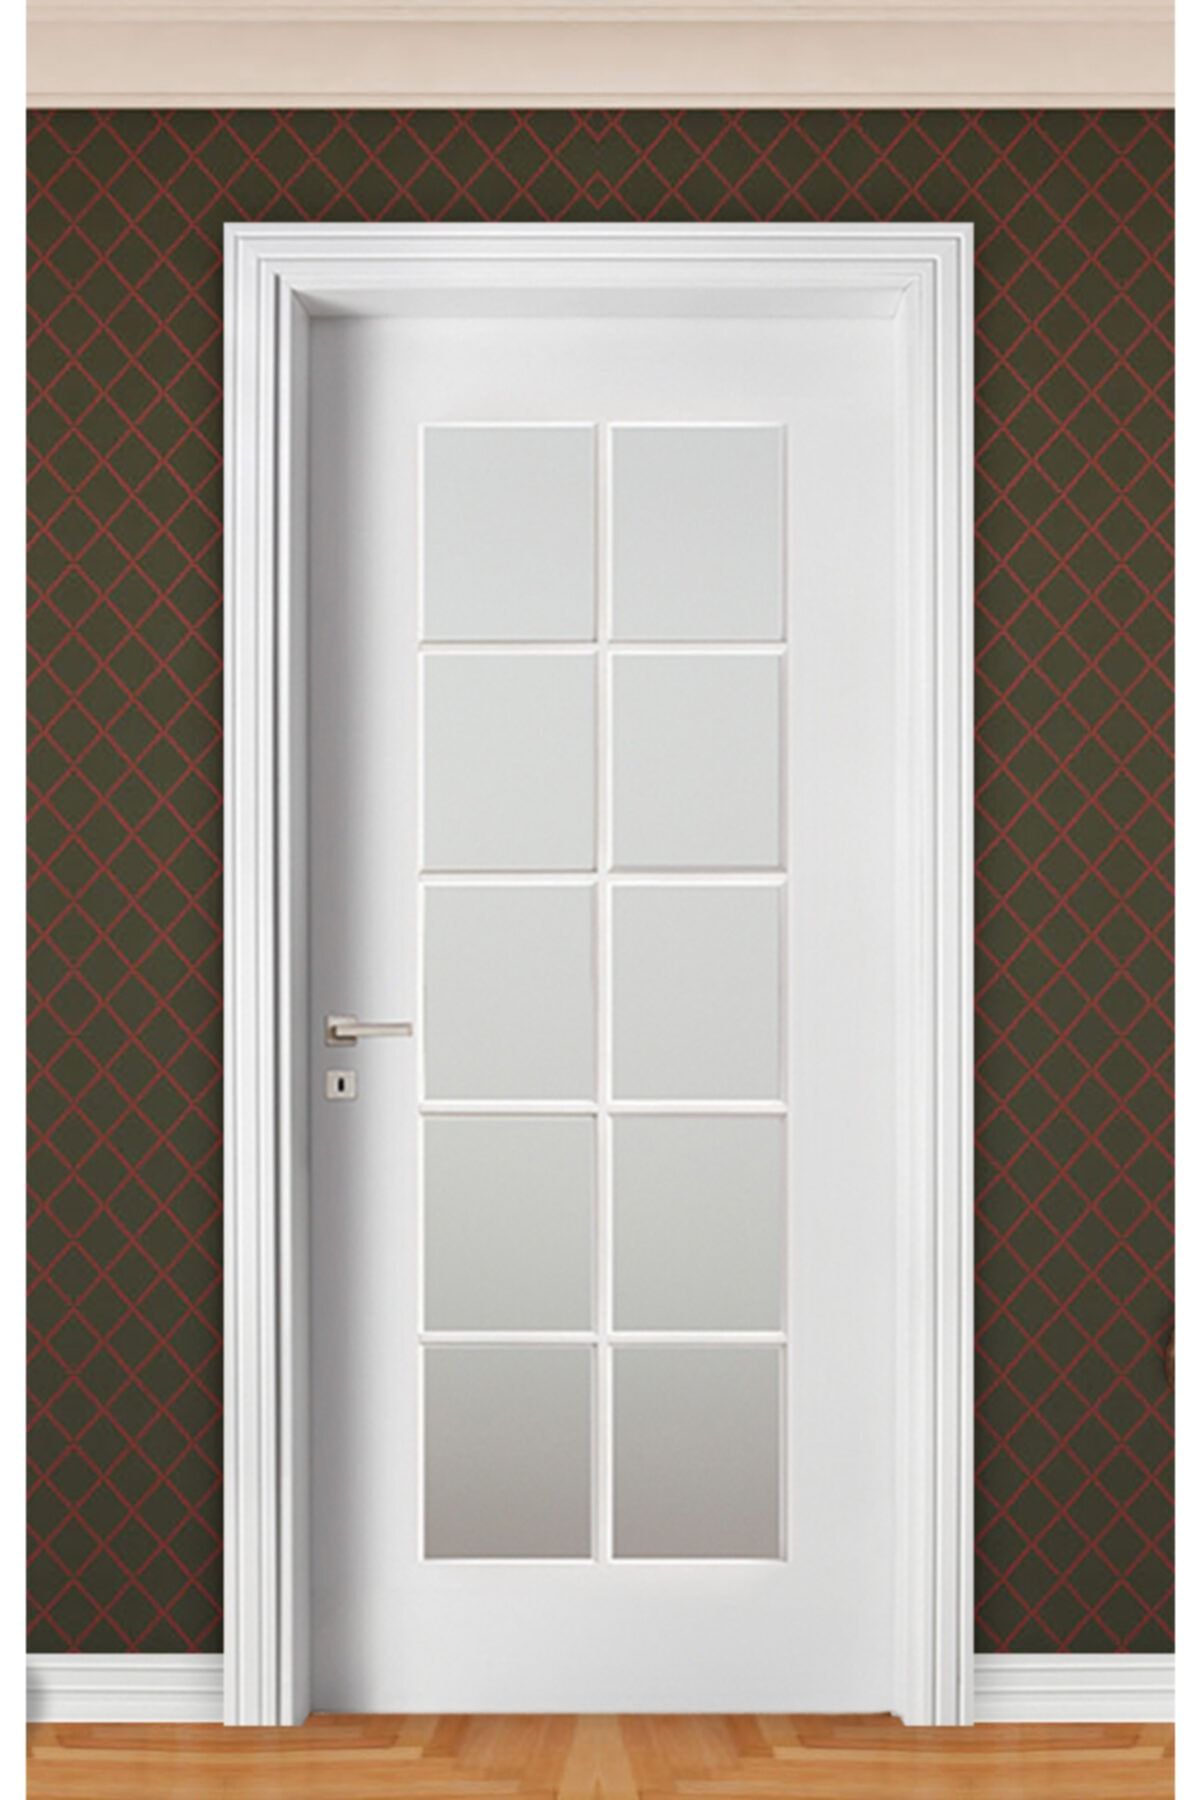 soylu kapı amerikan kapı panel oda kapısı fiyatı yorumları trendyol